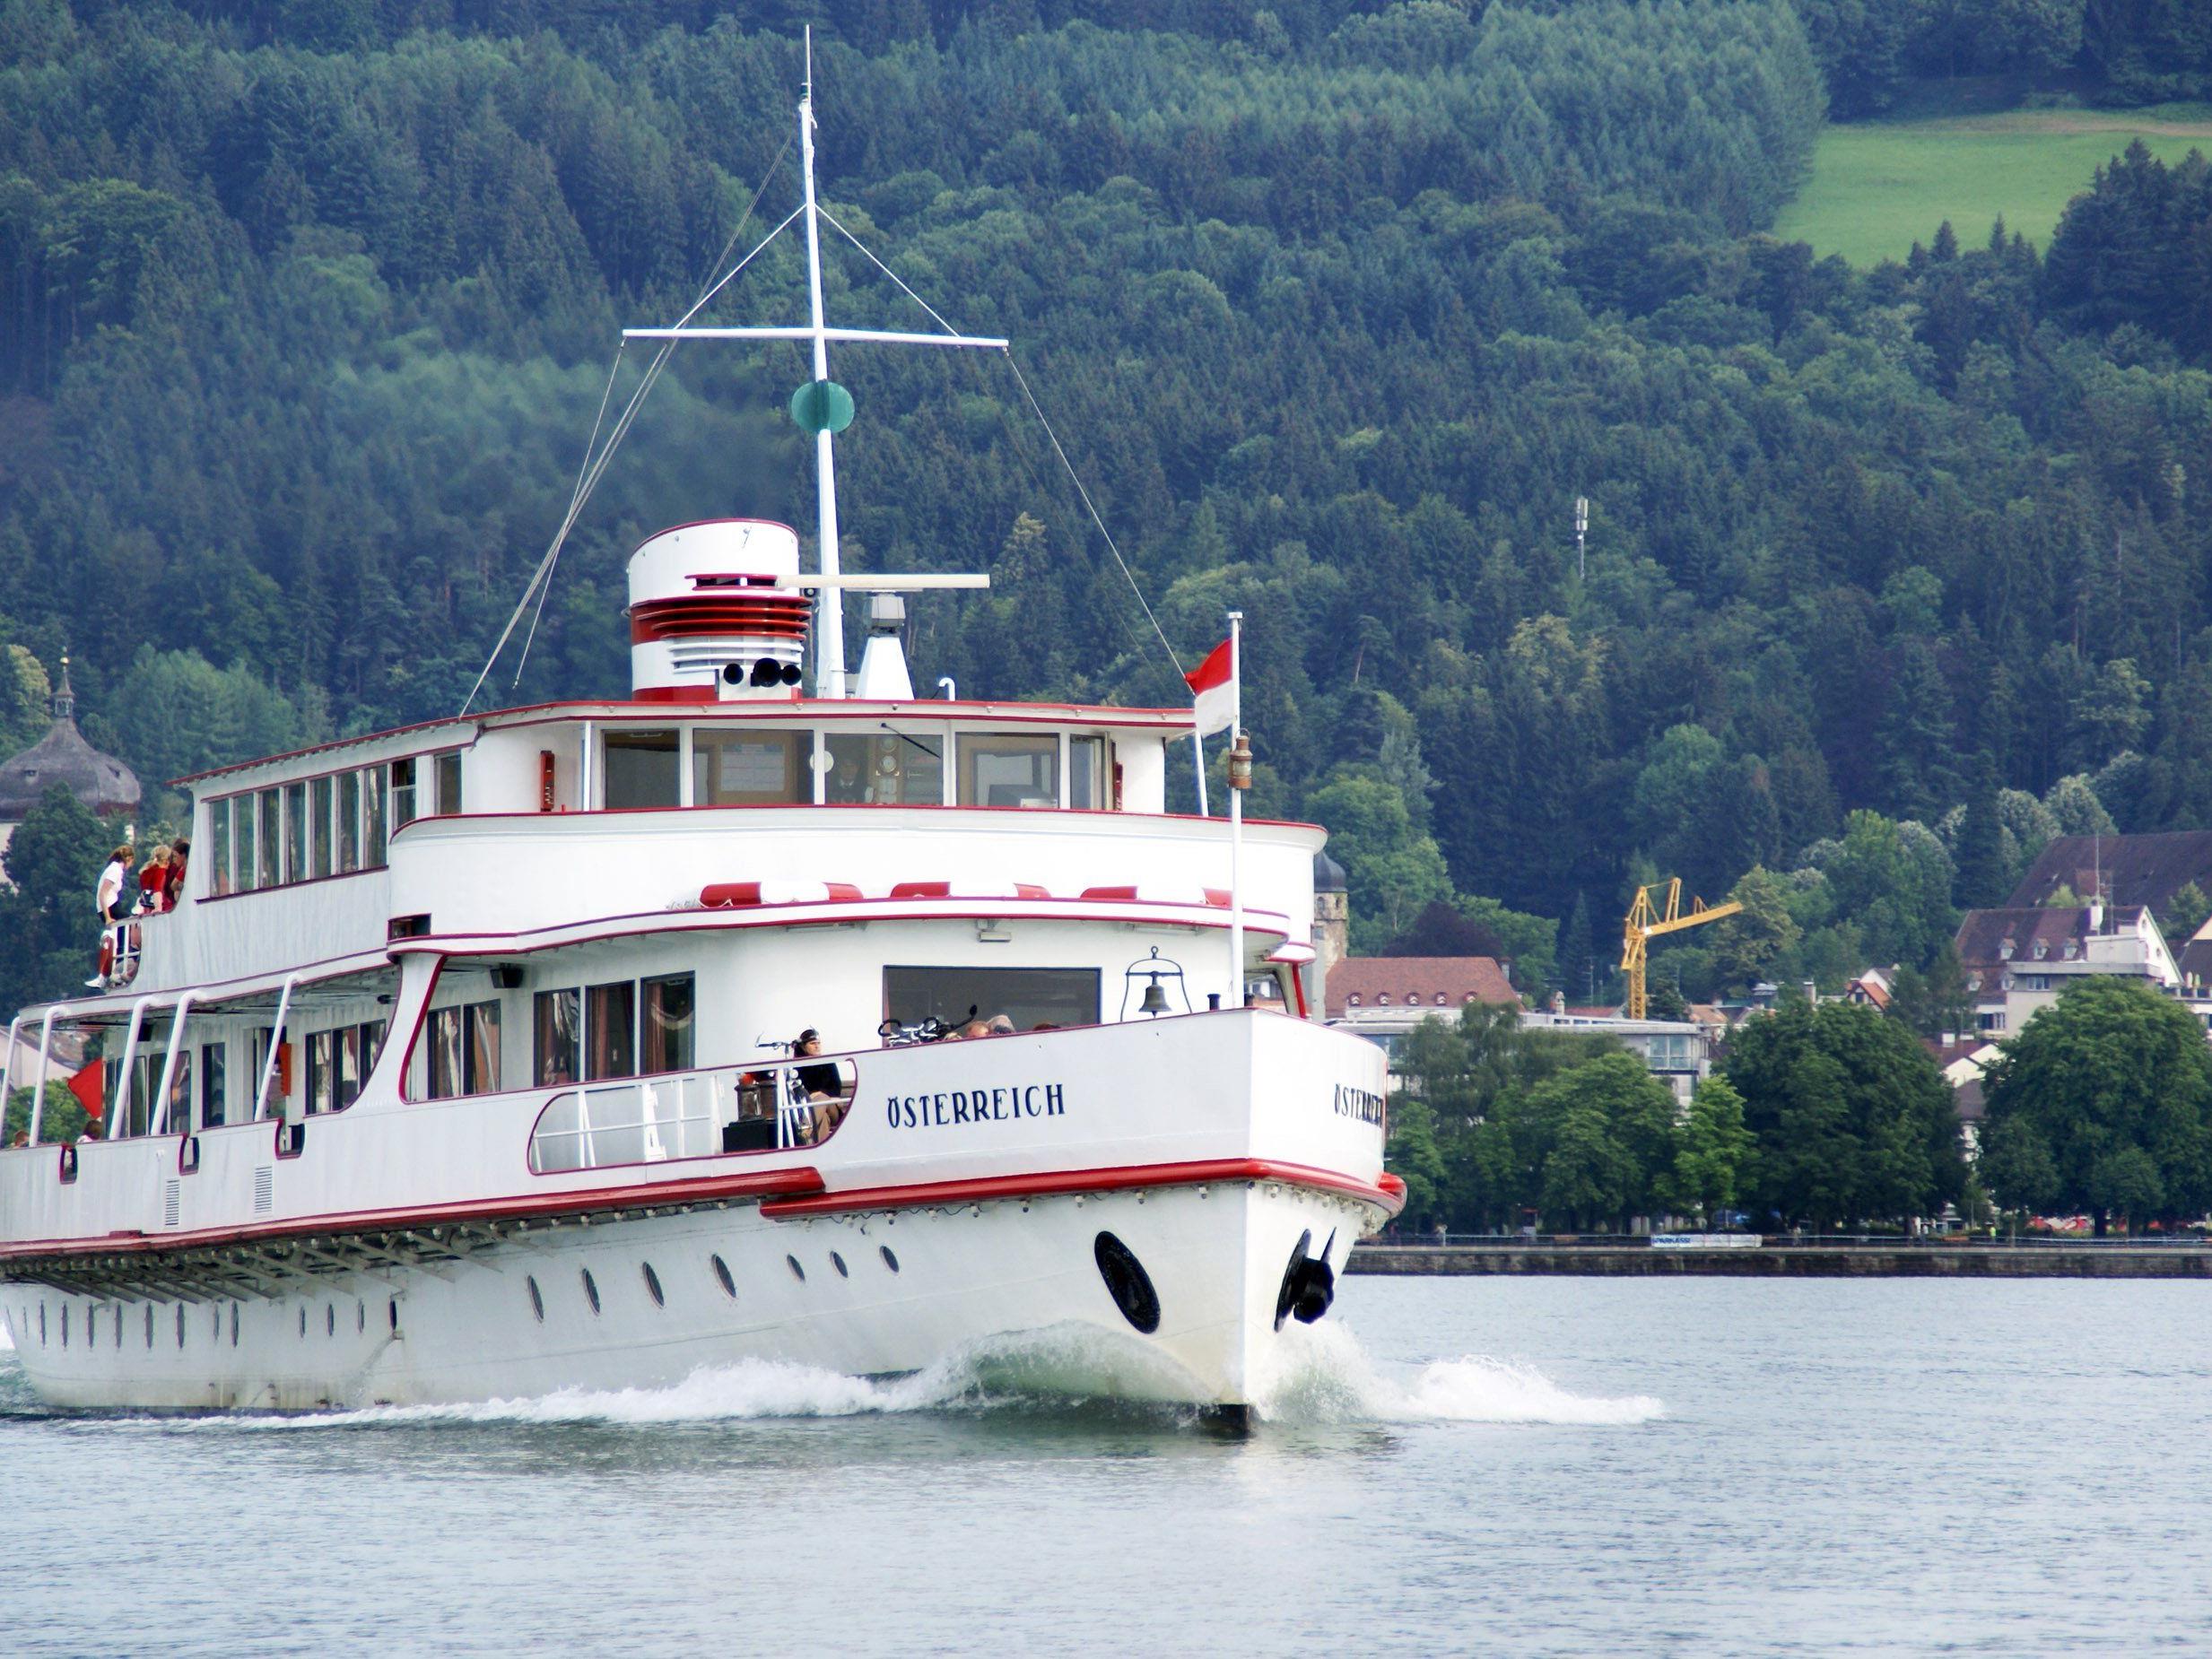 Das MS Österreich kann am 11. Juli besichtigt werden, weiters gibt es Schiffsinventar zu erwerben.